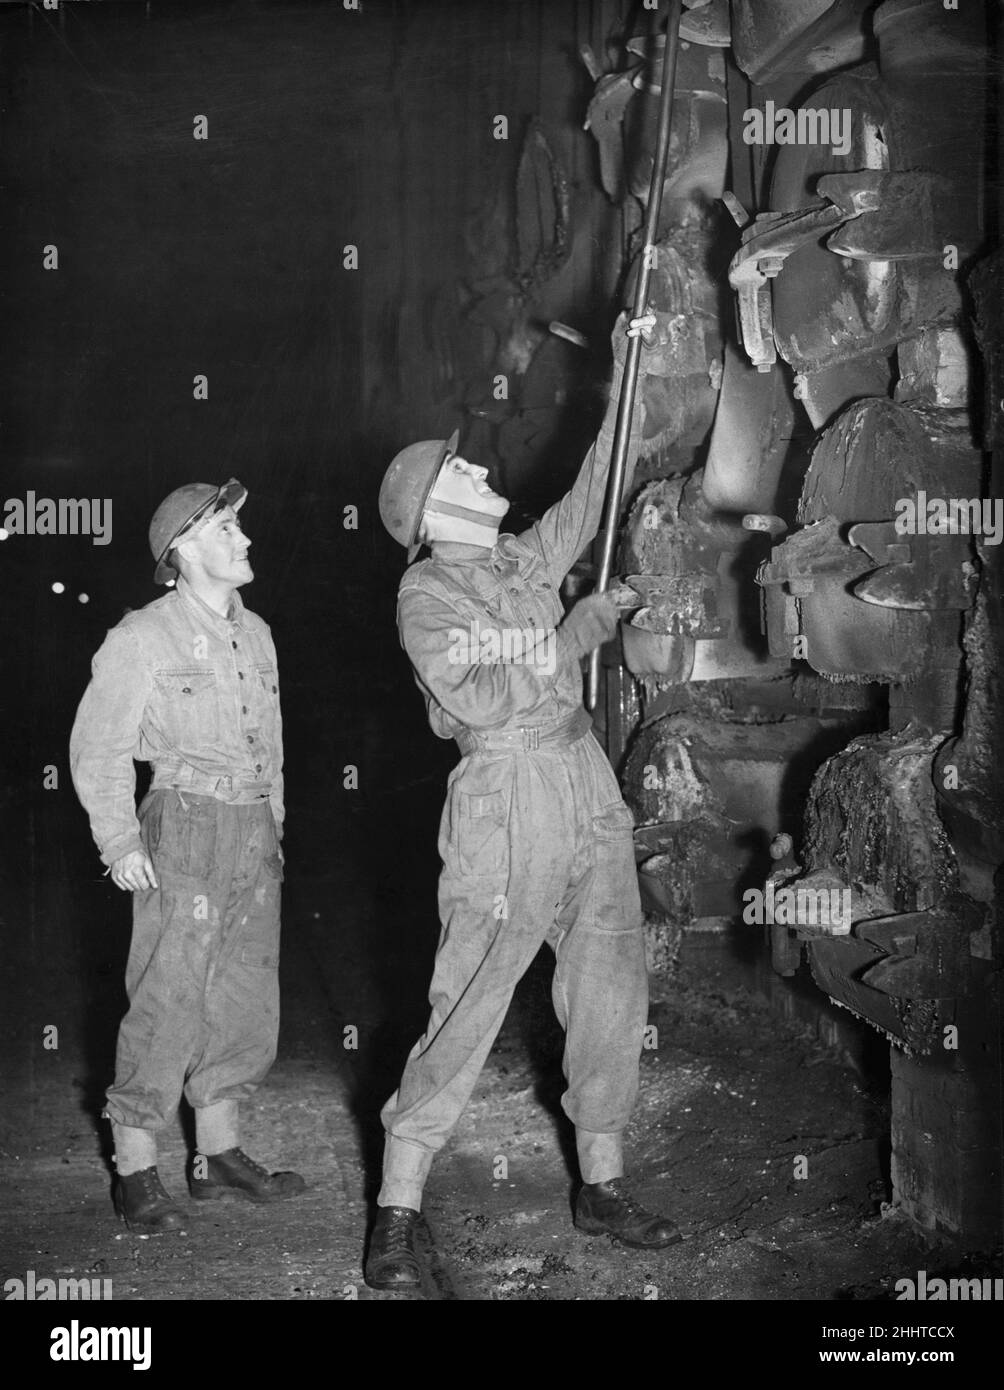 Soldaten, die hier bei der Arbeit im Retortenhaus der Gaswerke gesehen wurden. Die Soldaten müssen sich für streikende Arbeiter decken. 8th. November 1944 *** Ortsüberschrift *** - - 09/07/2009 - - Stockfoto